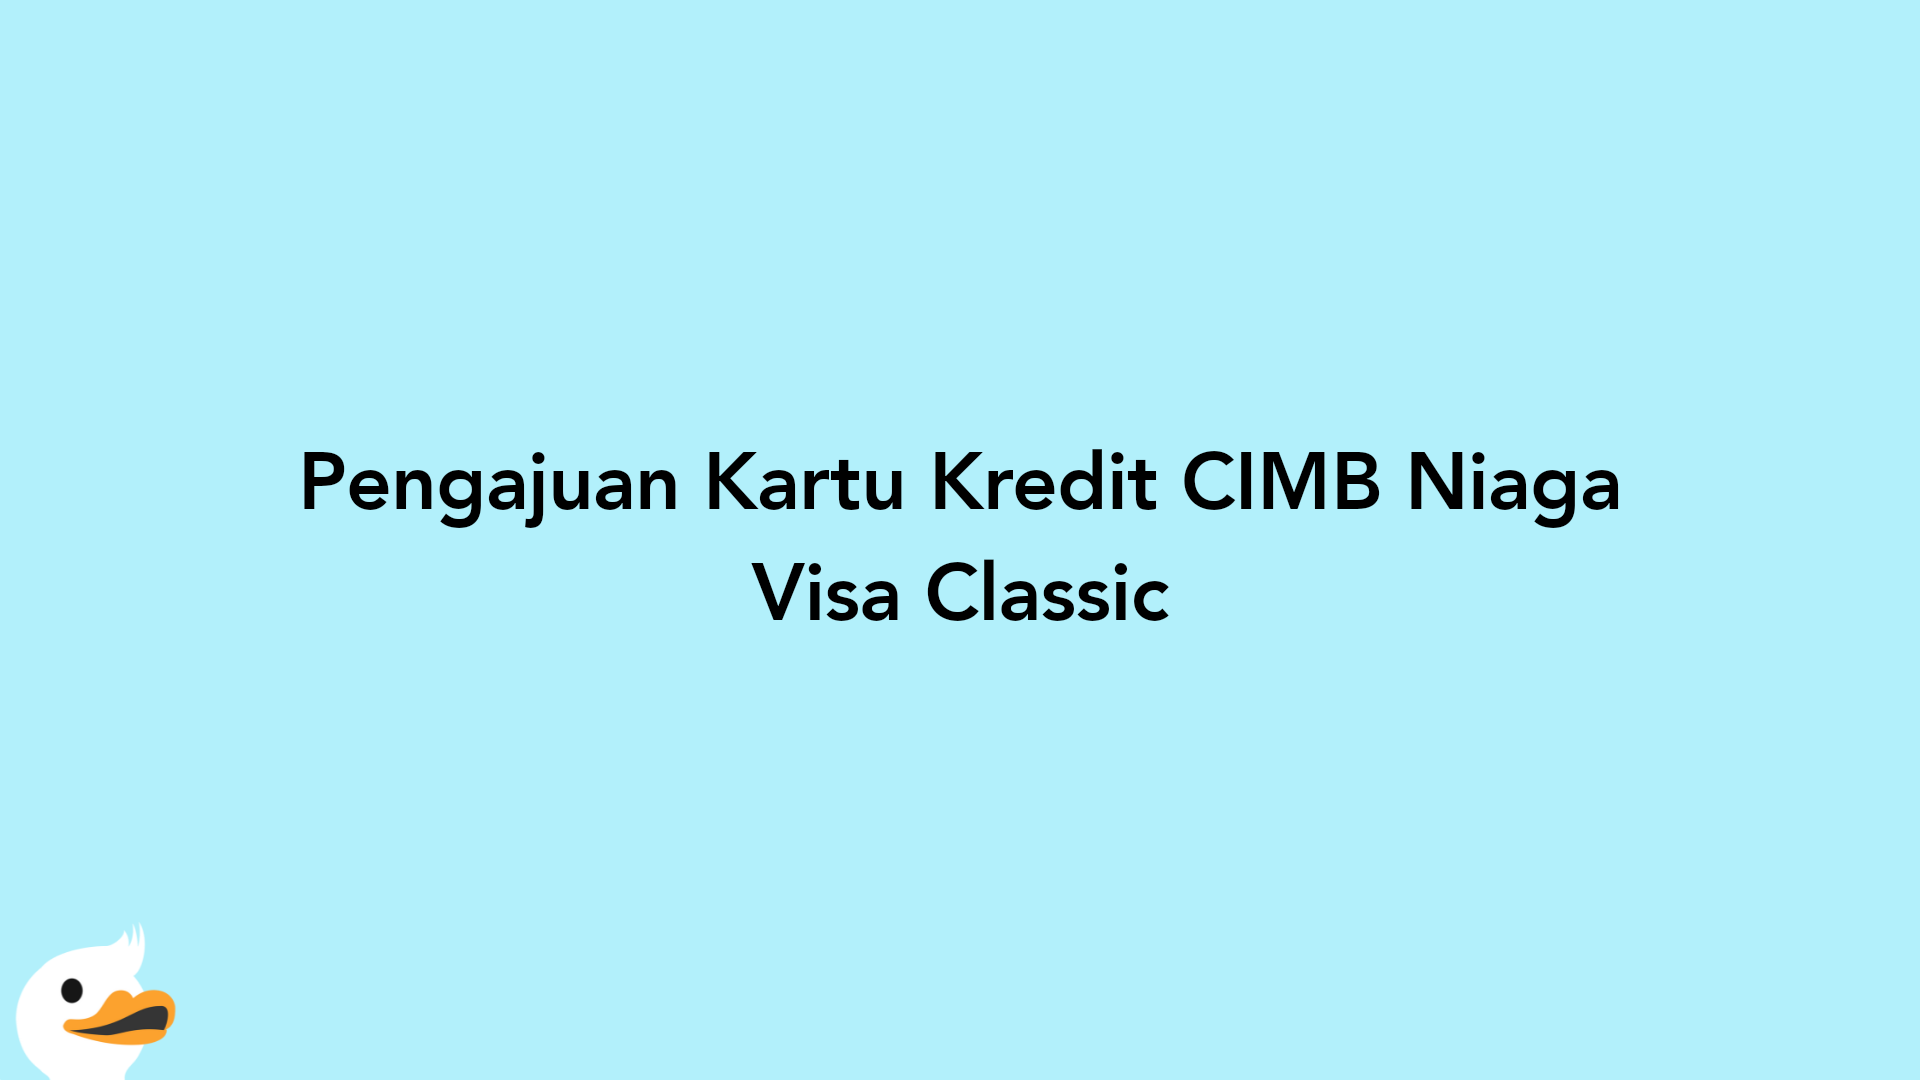 Pengajuan Kartu Kredit CIMB Niaga Visa Classic